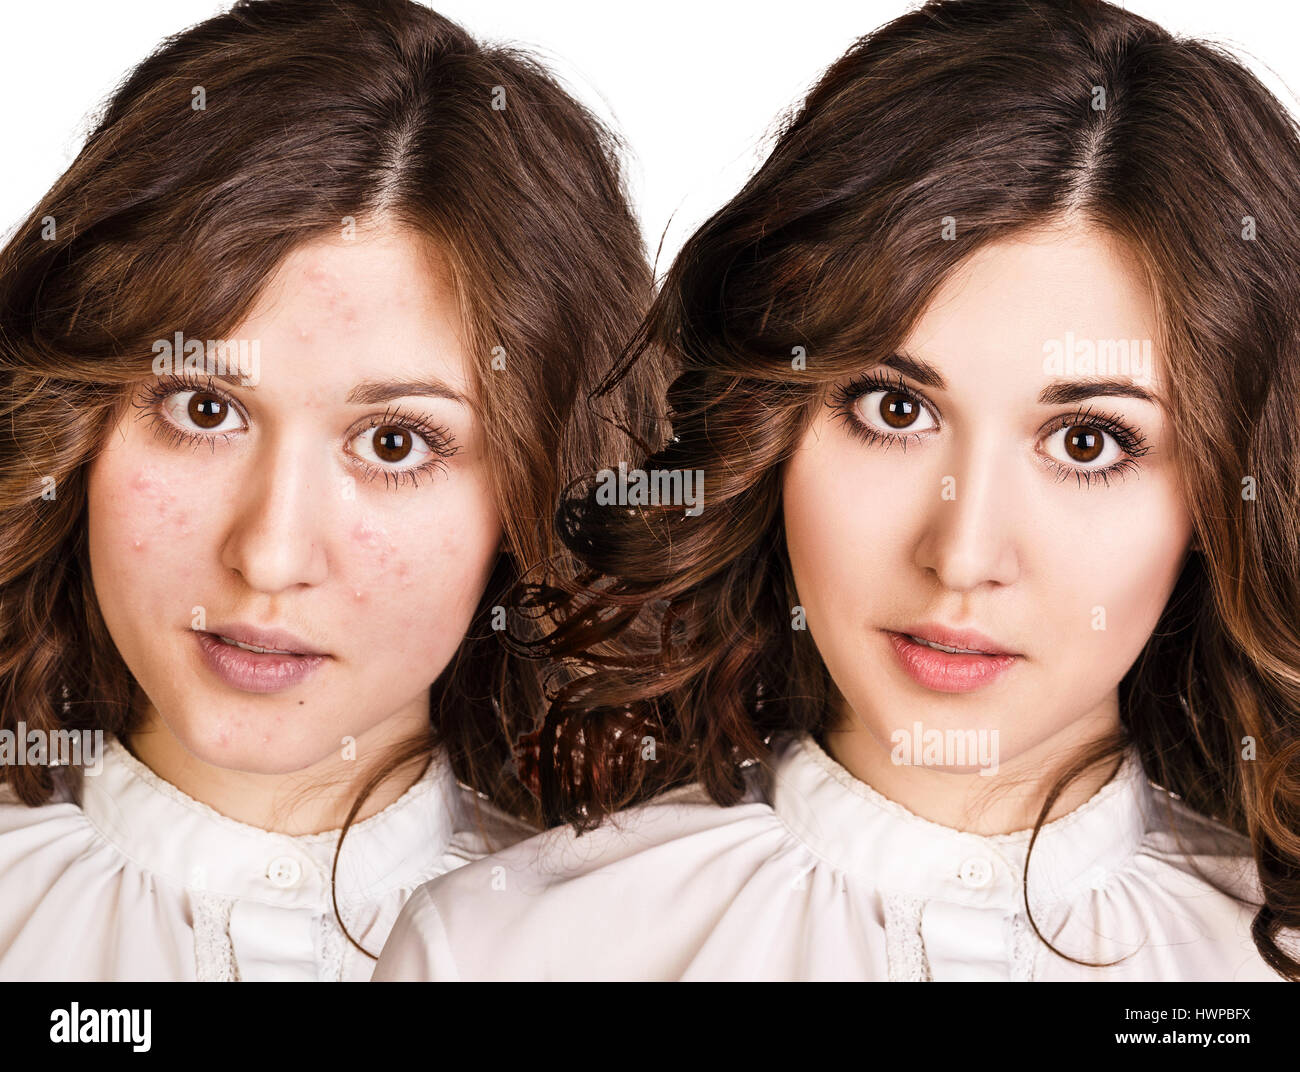 Vergleich-Porträt des jungen Mädchens mit problematischer Haut vor und nach Behandlung und Make-up. Stockfoto